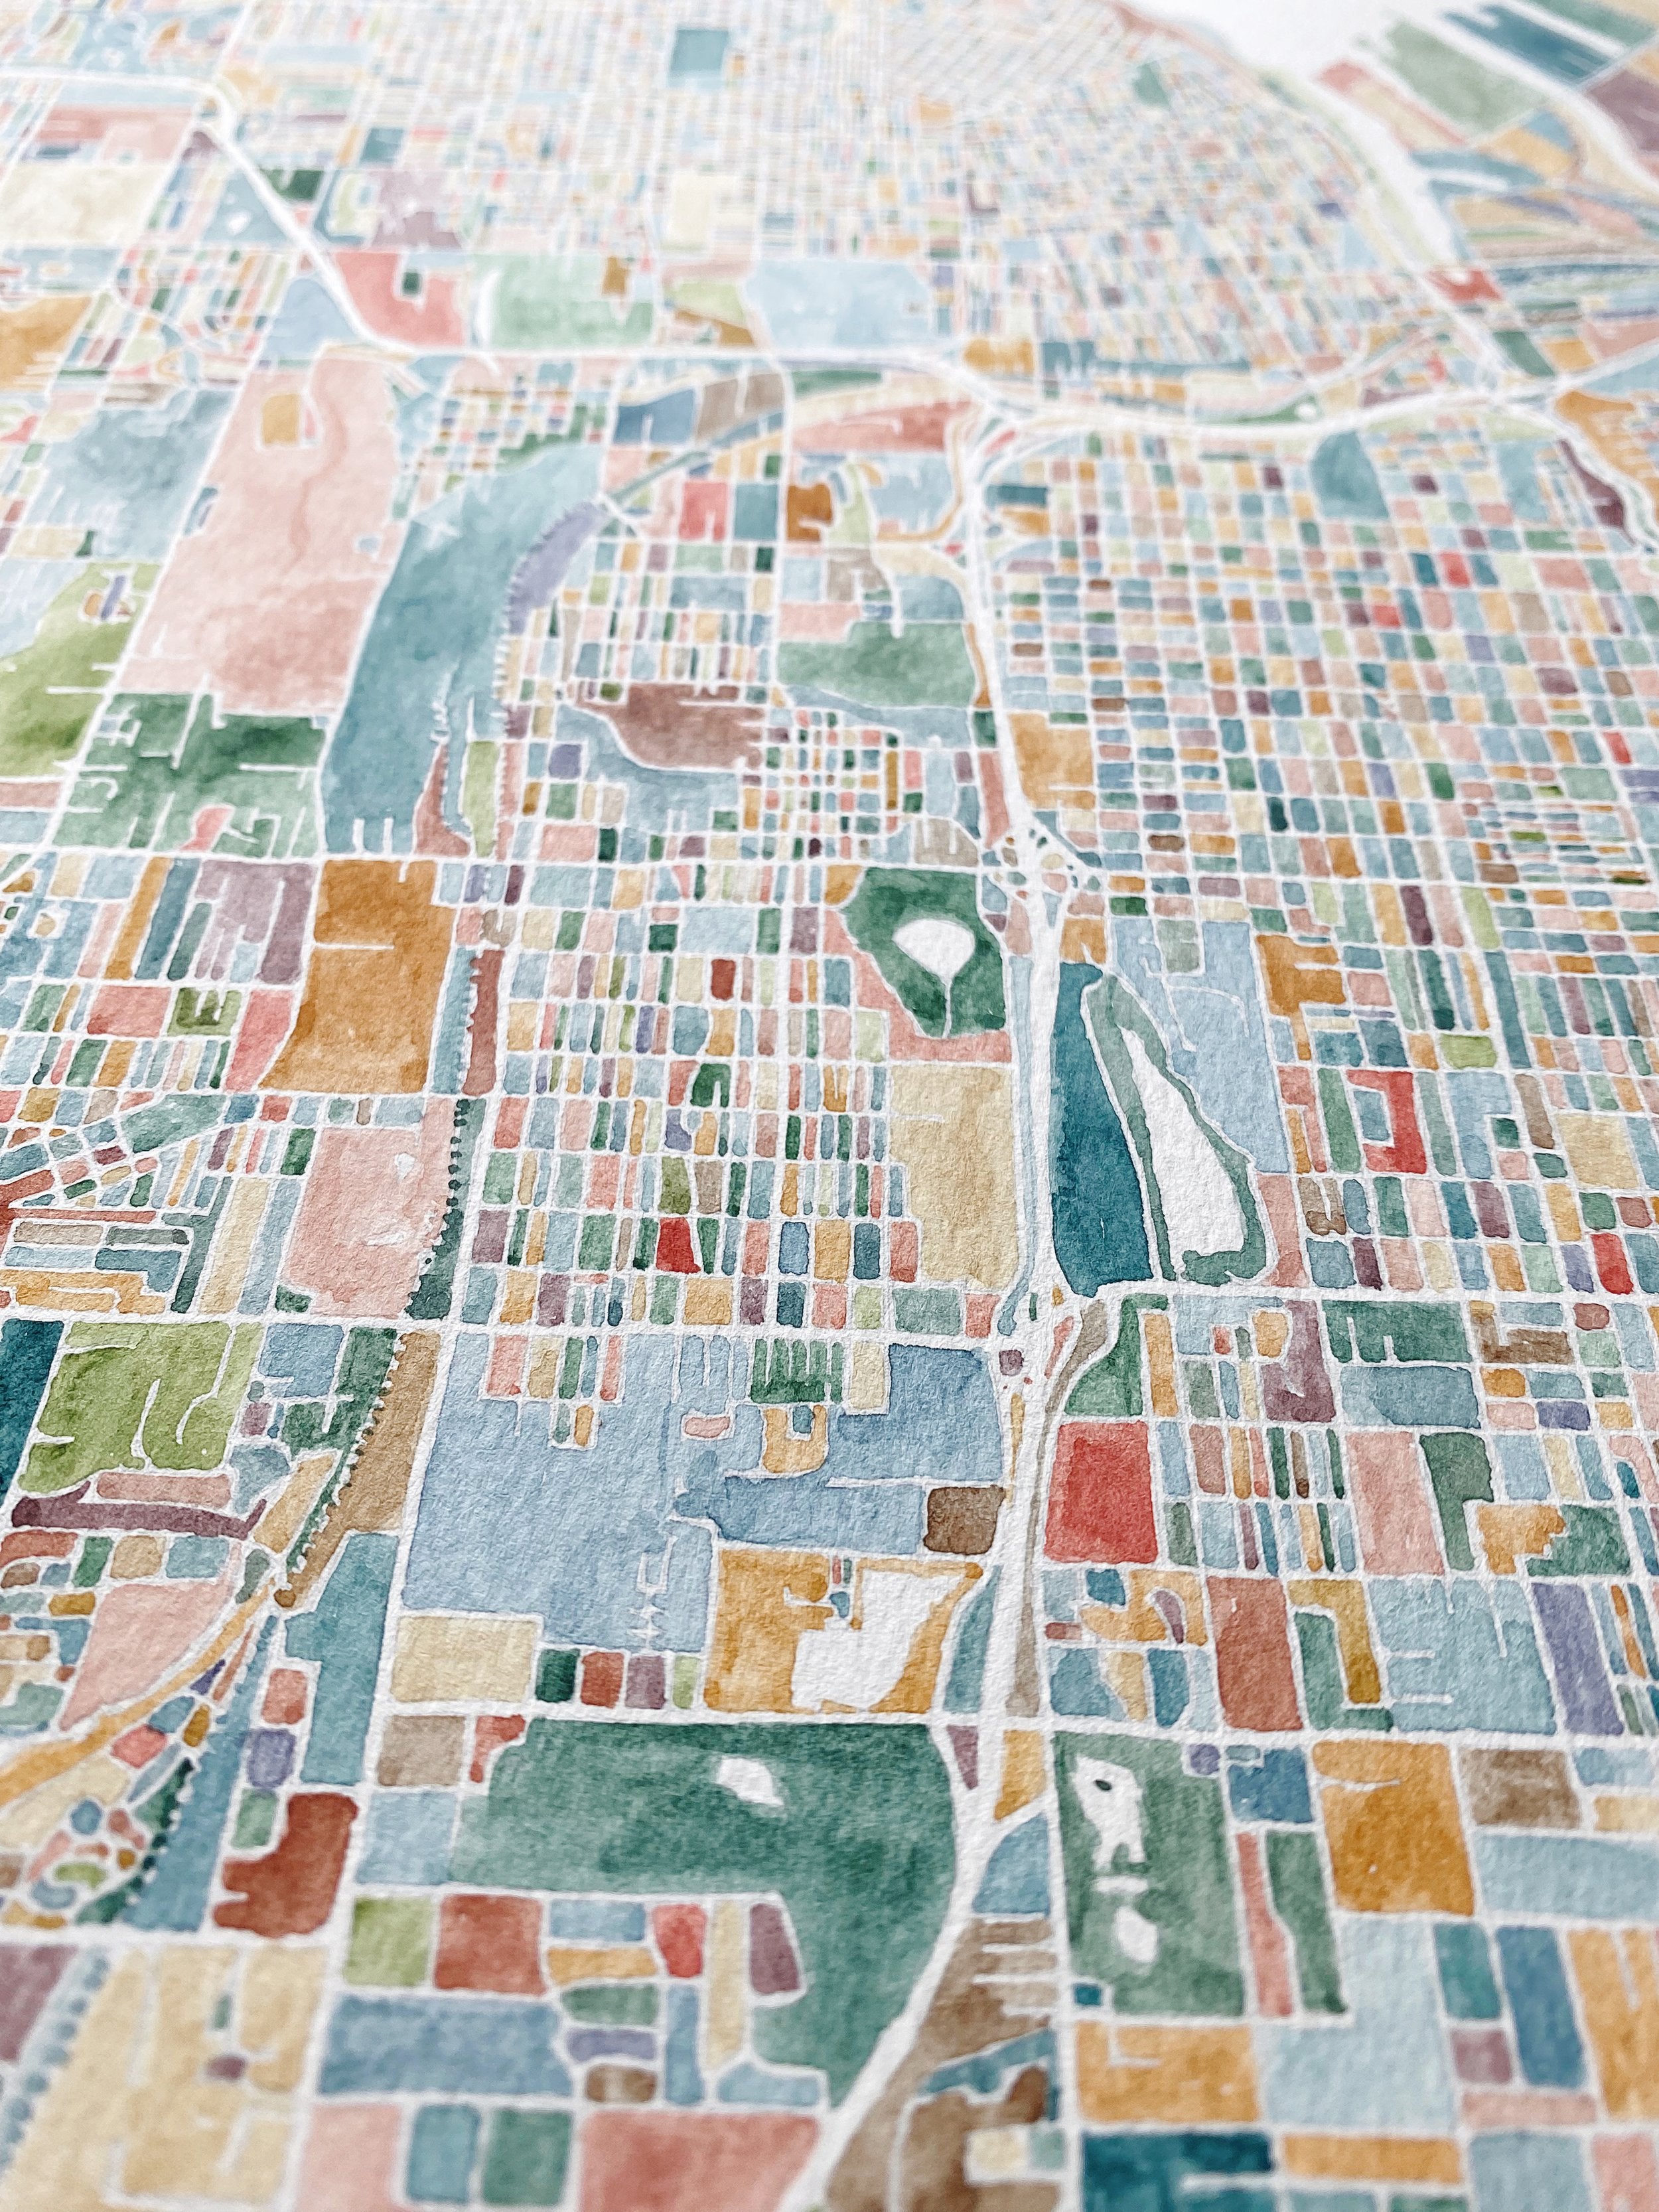 TACOMA ColorFULL Watercolor City Blocks Map: ORIGINAL PAINTING